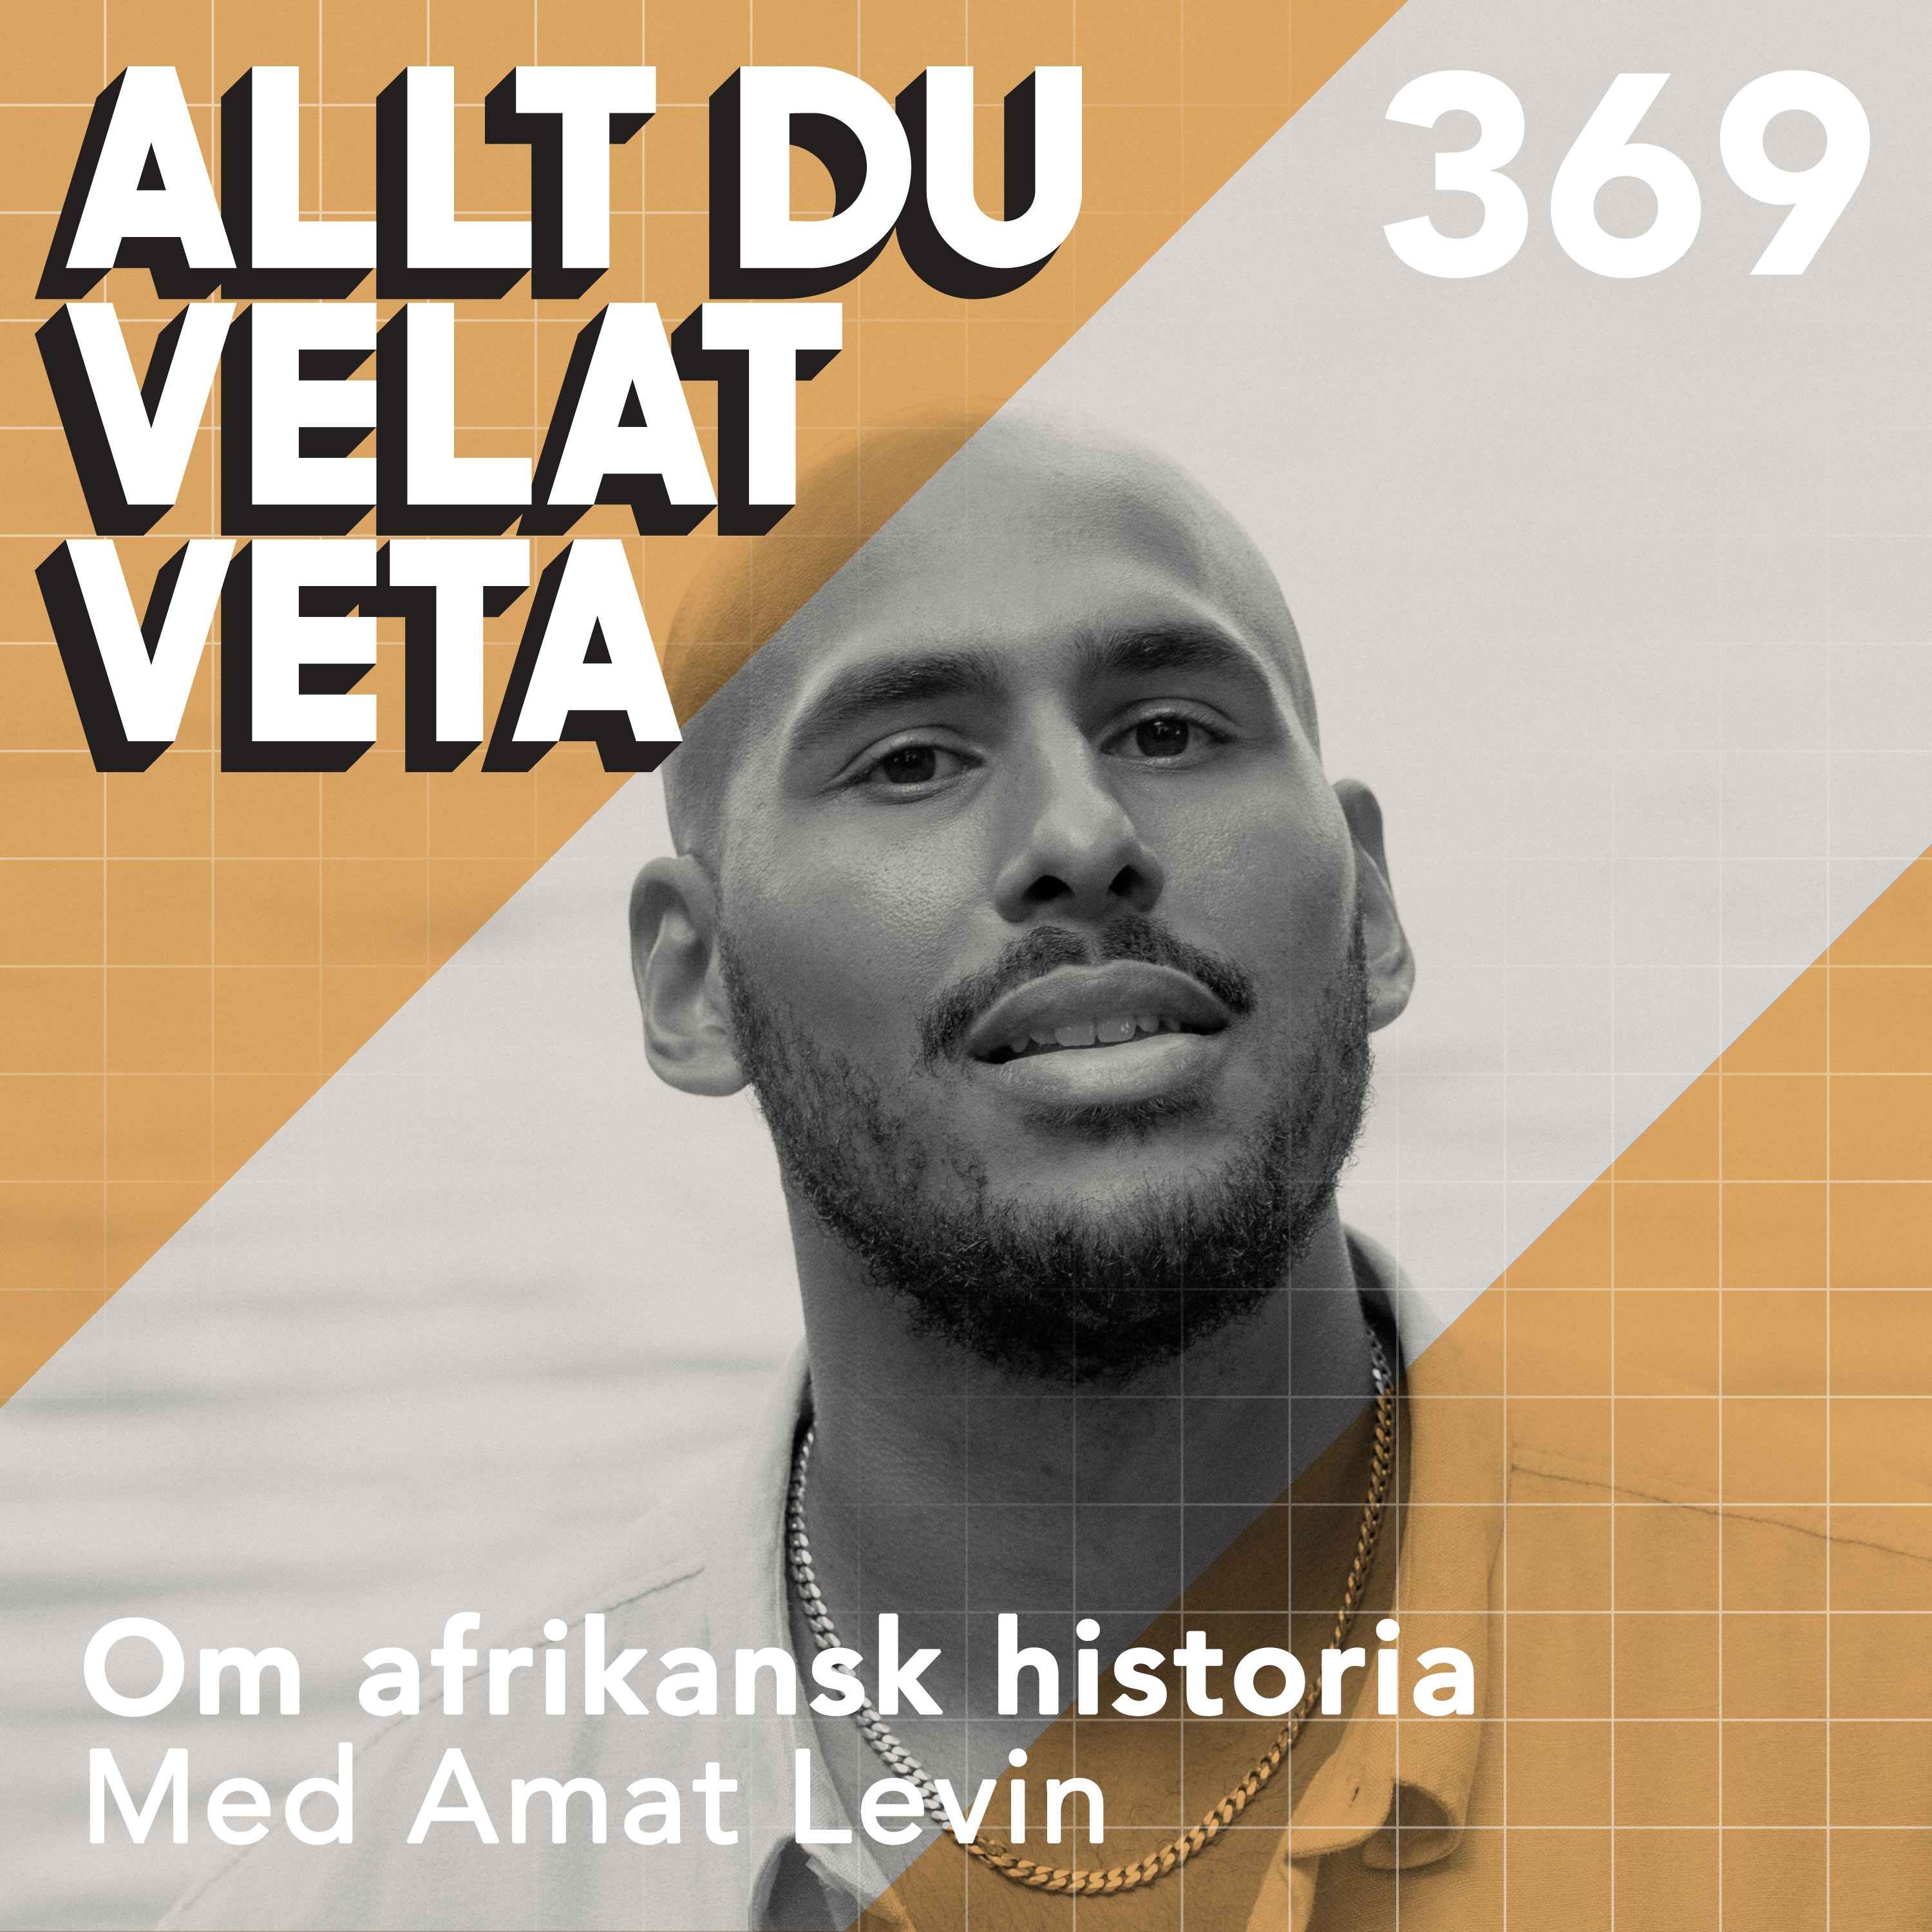 369 Om afrikansk historia med Amat Levin